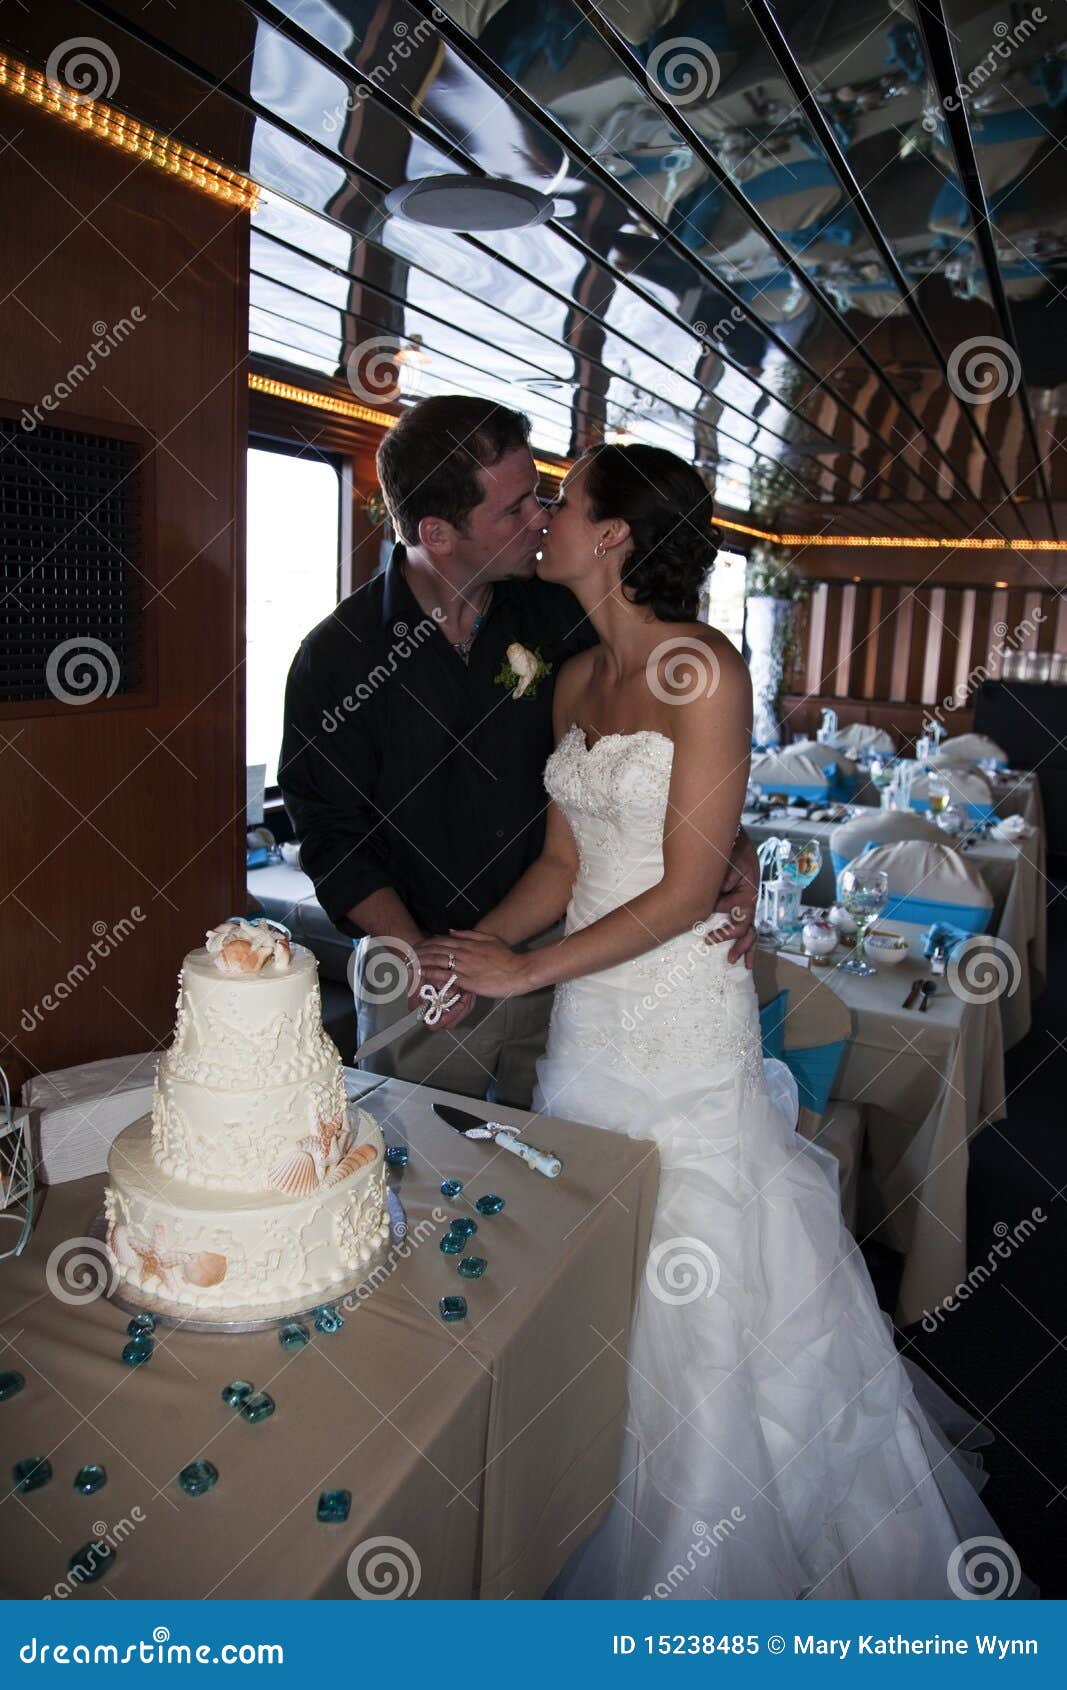 Romantic Couple Photo Cake